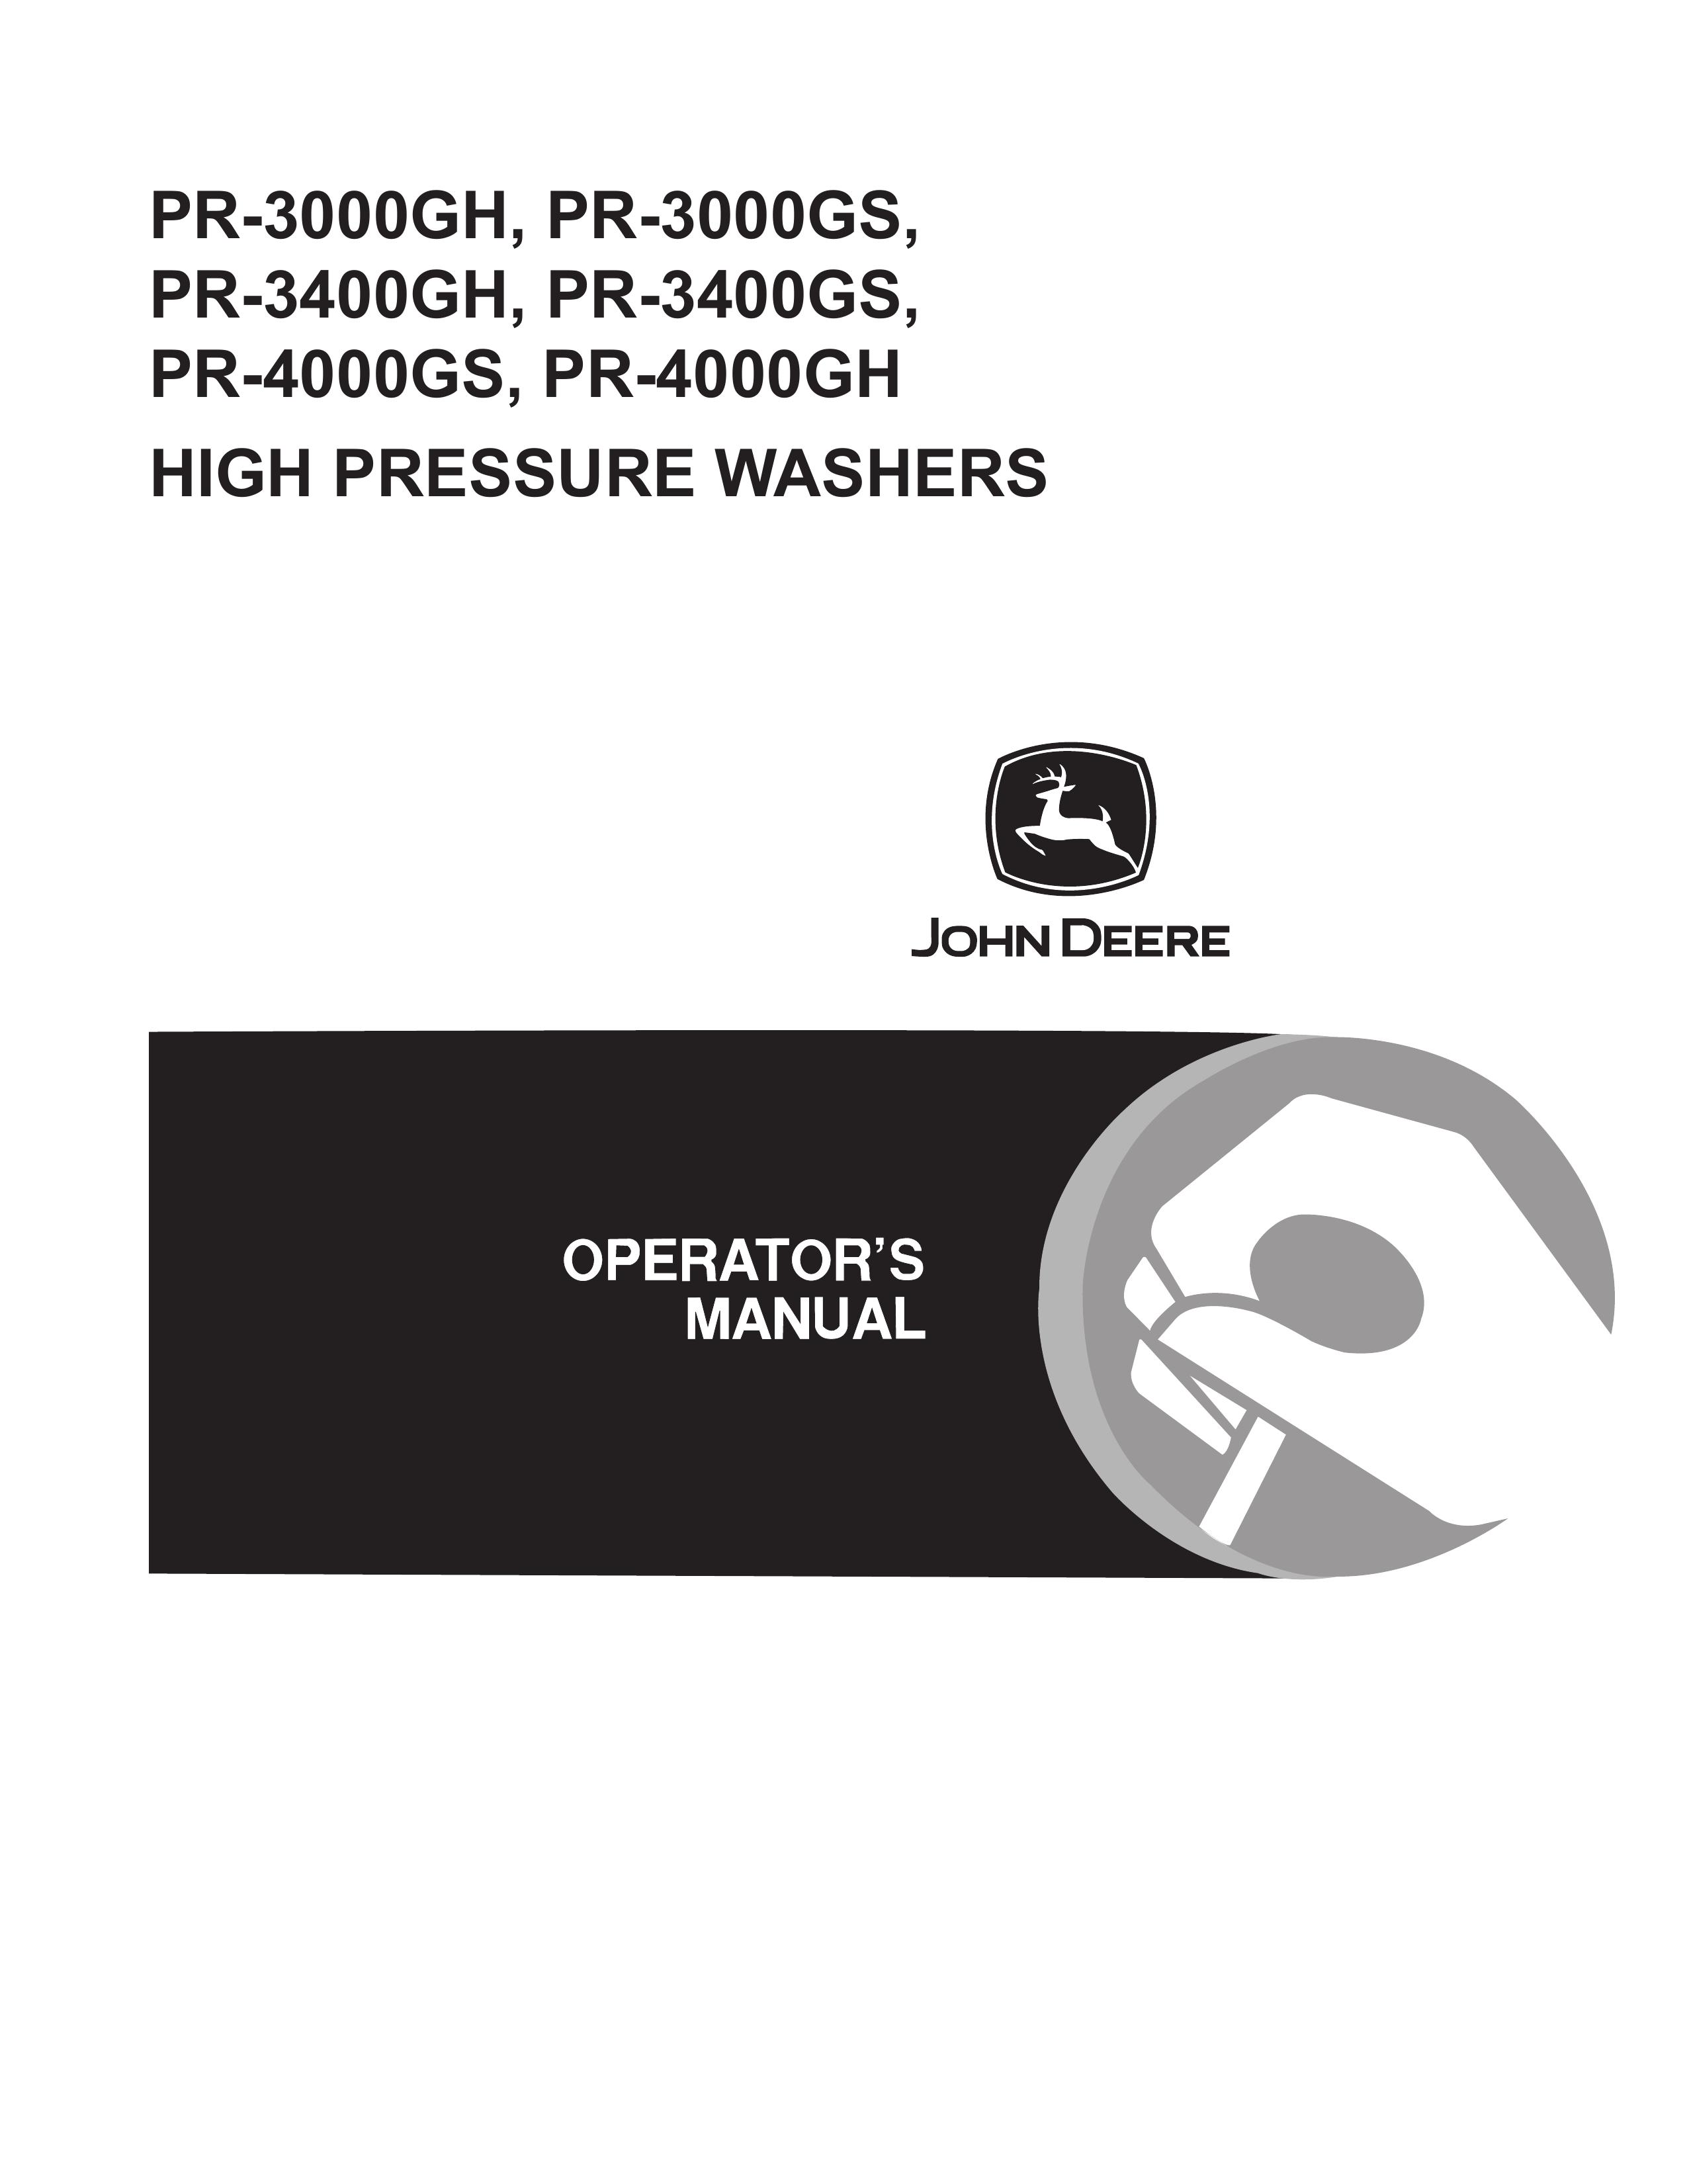 John Deere PR-3400GH Pressure Washer User Manual